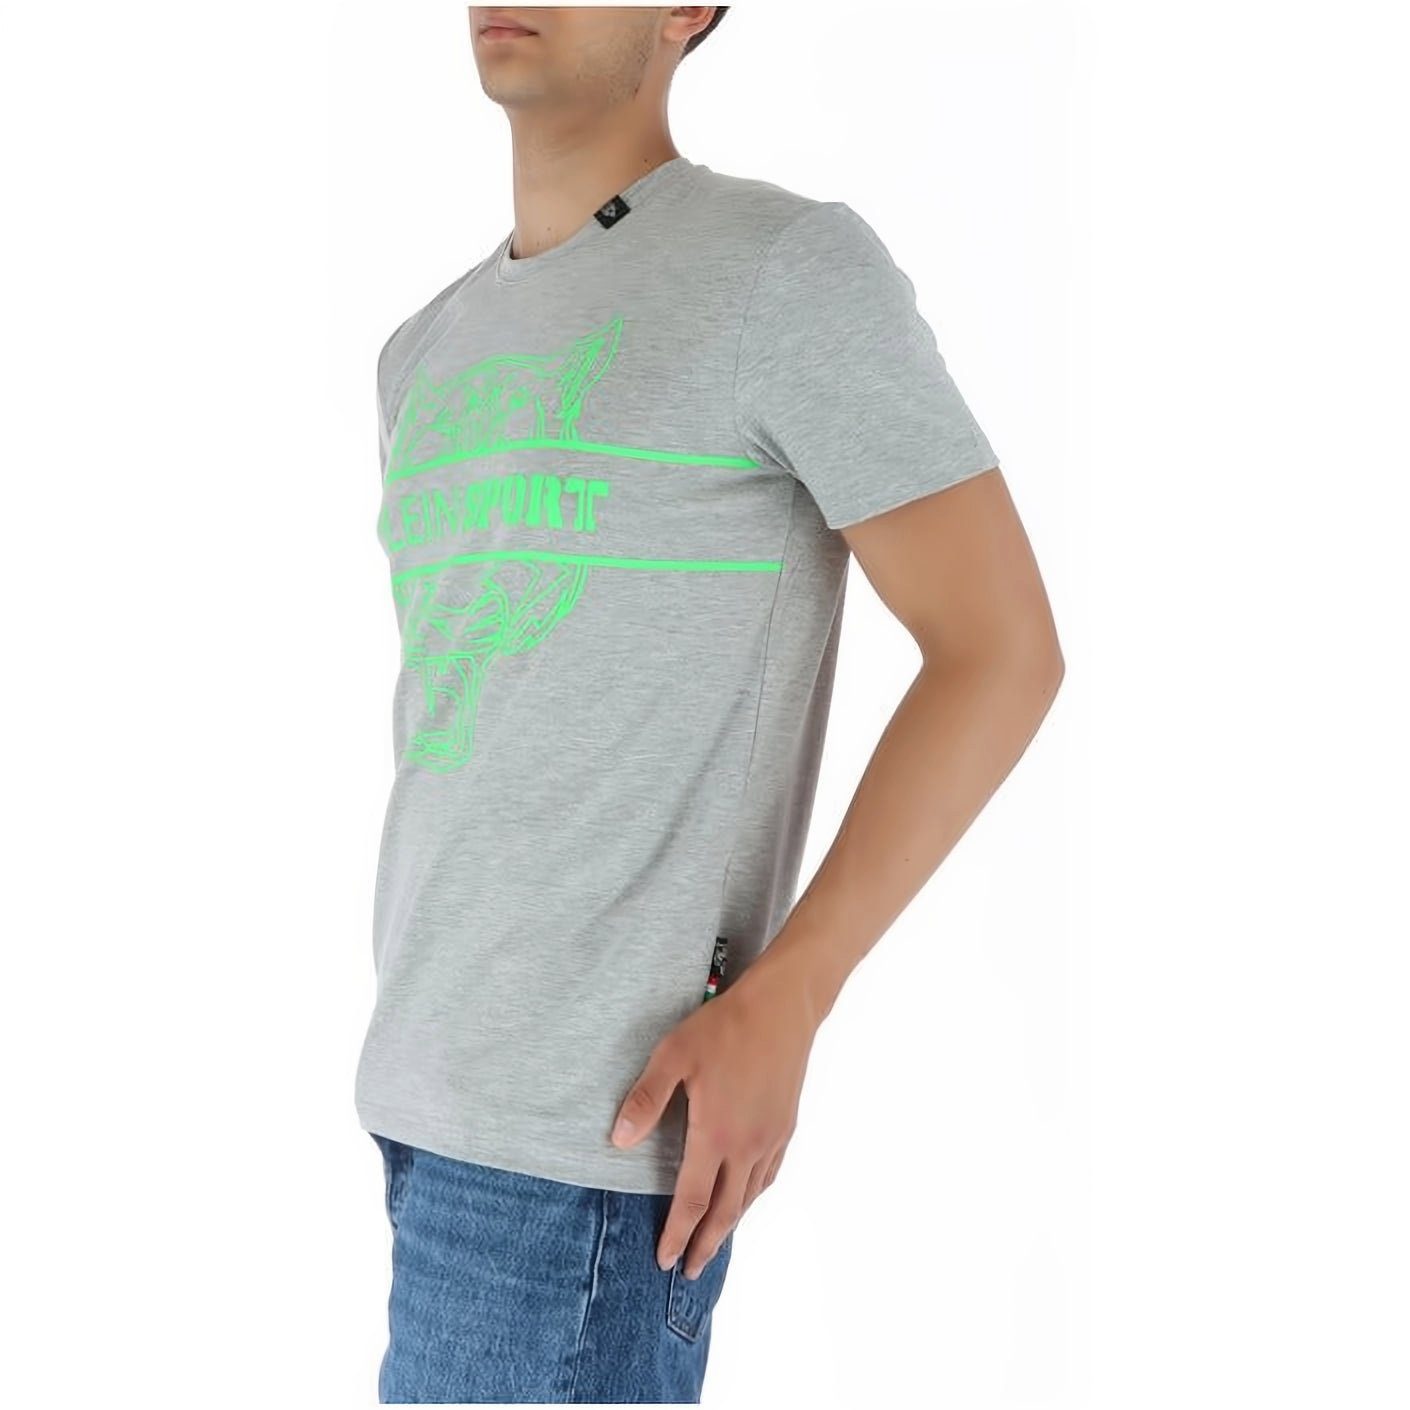 Tragekomfort, vielfältige hoher Stylischer SPORT Farbauswahl NECK ROUND PLEIN T-Shirt Look,